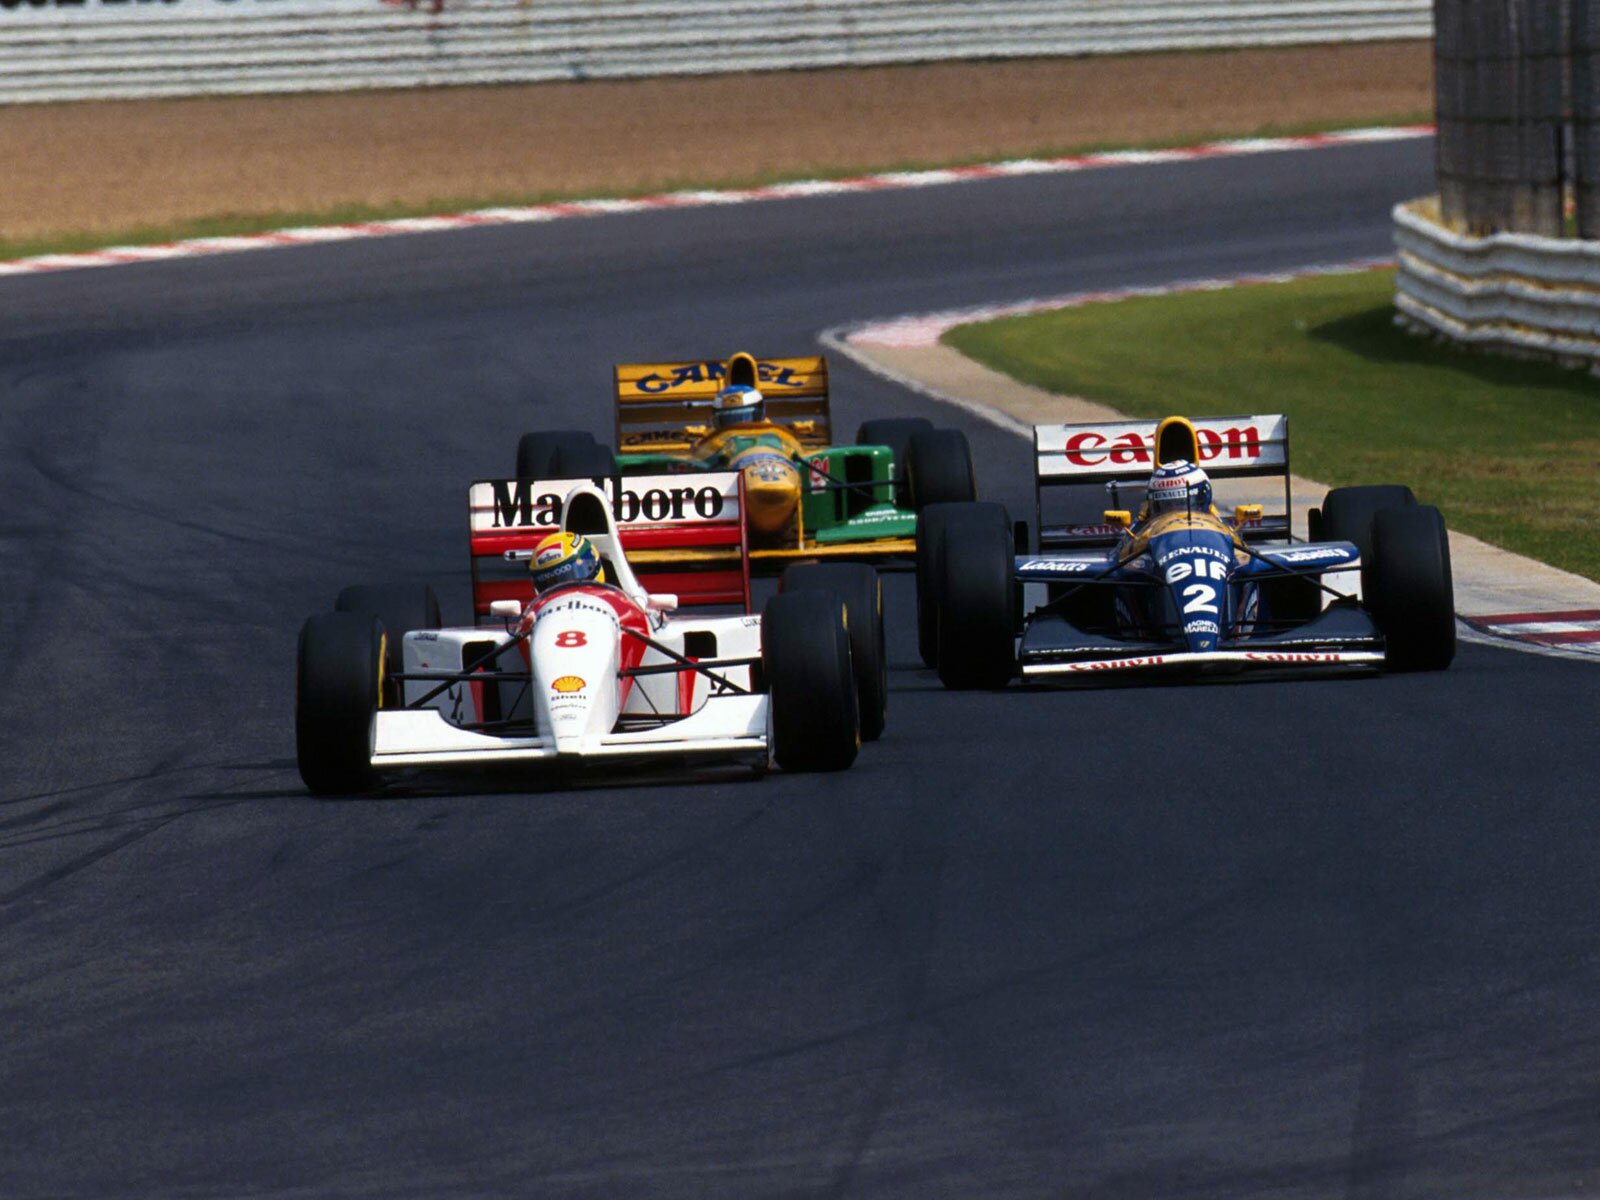 Senna - Prost - Schumacher (Three best drivers ever) 